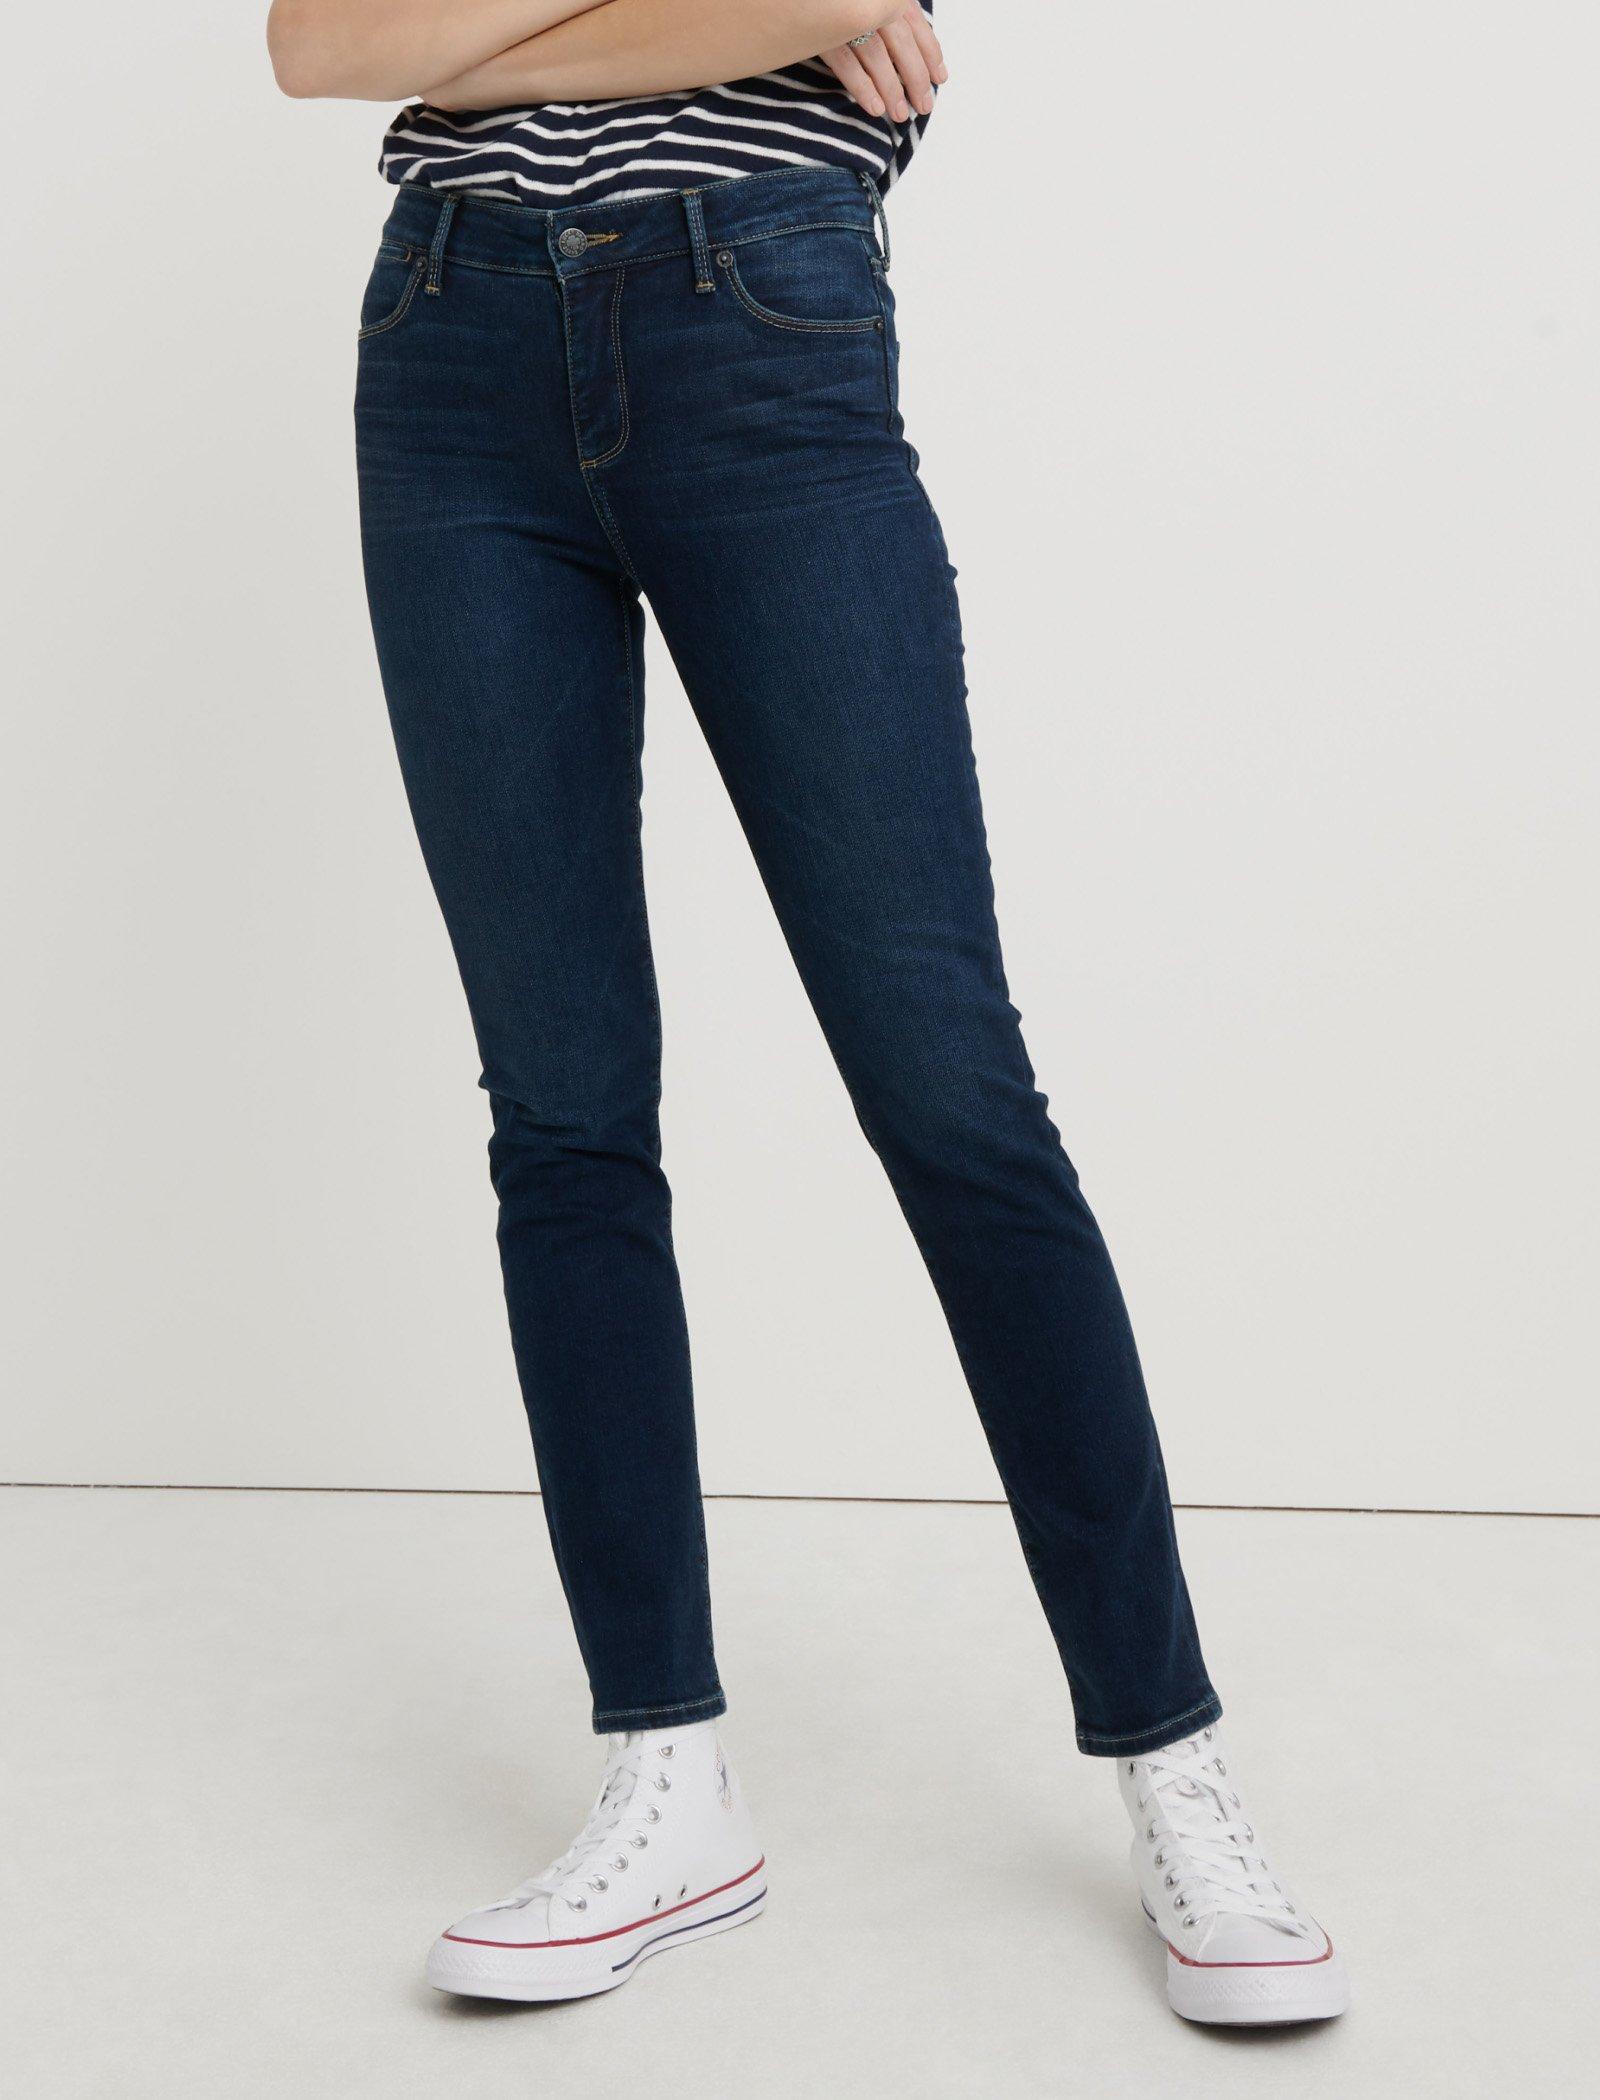 khaki denim jeans womens